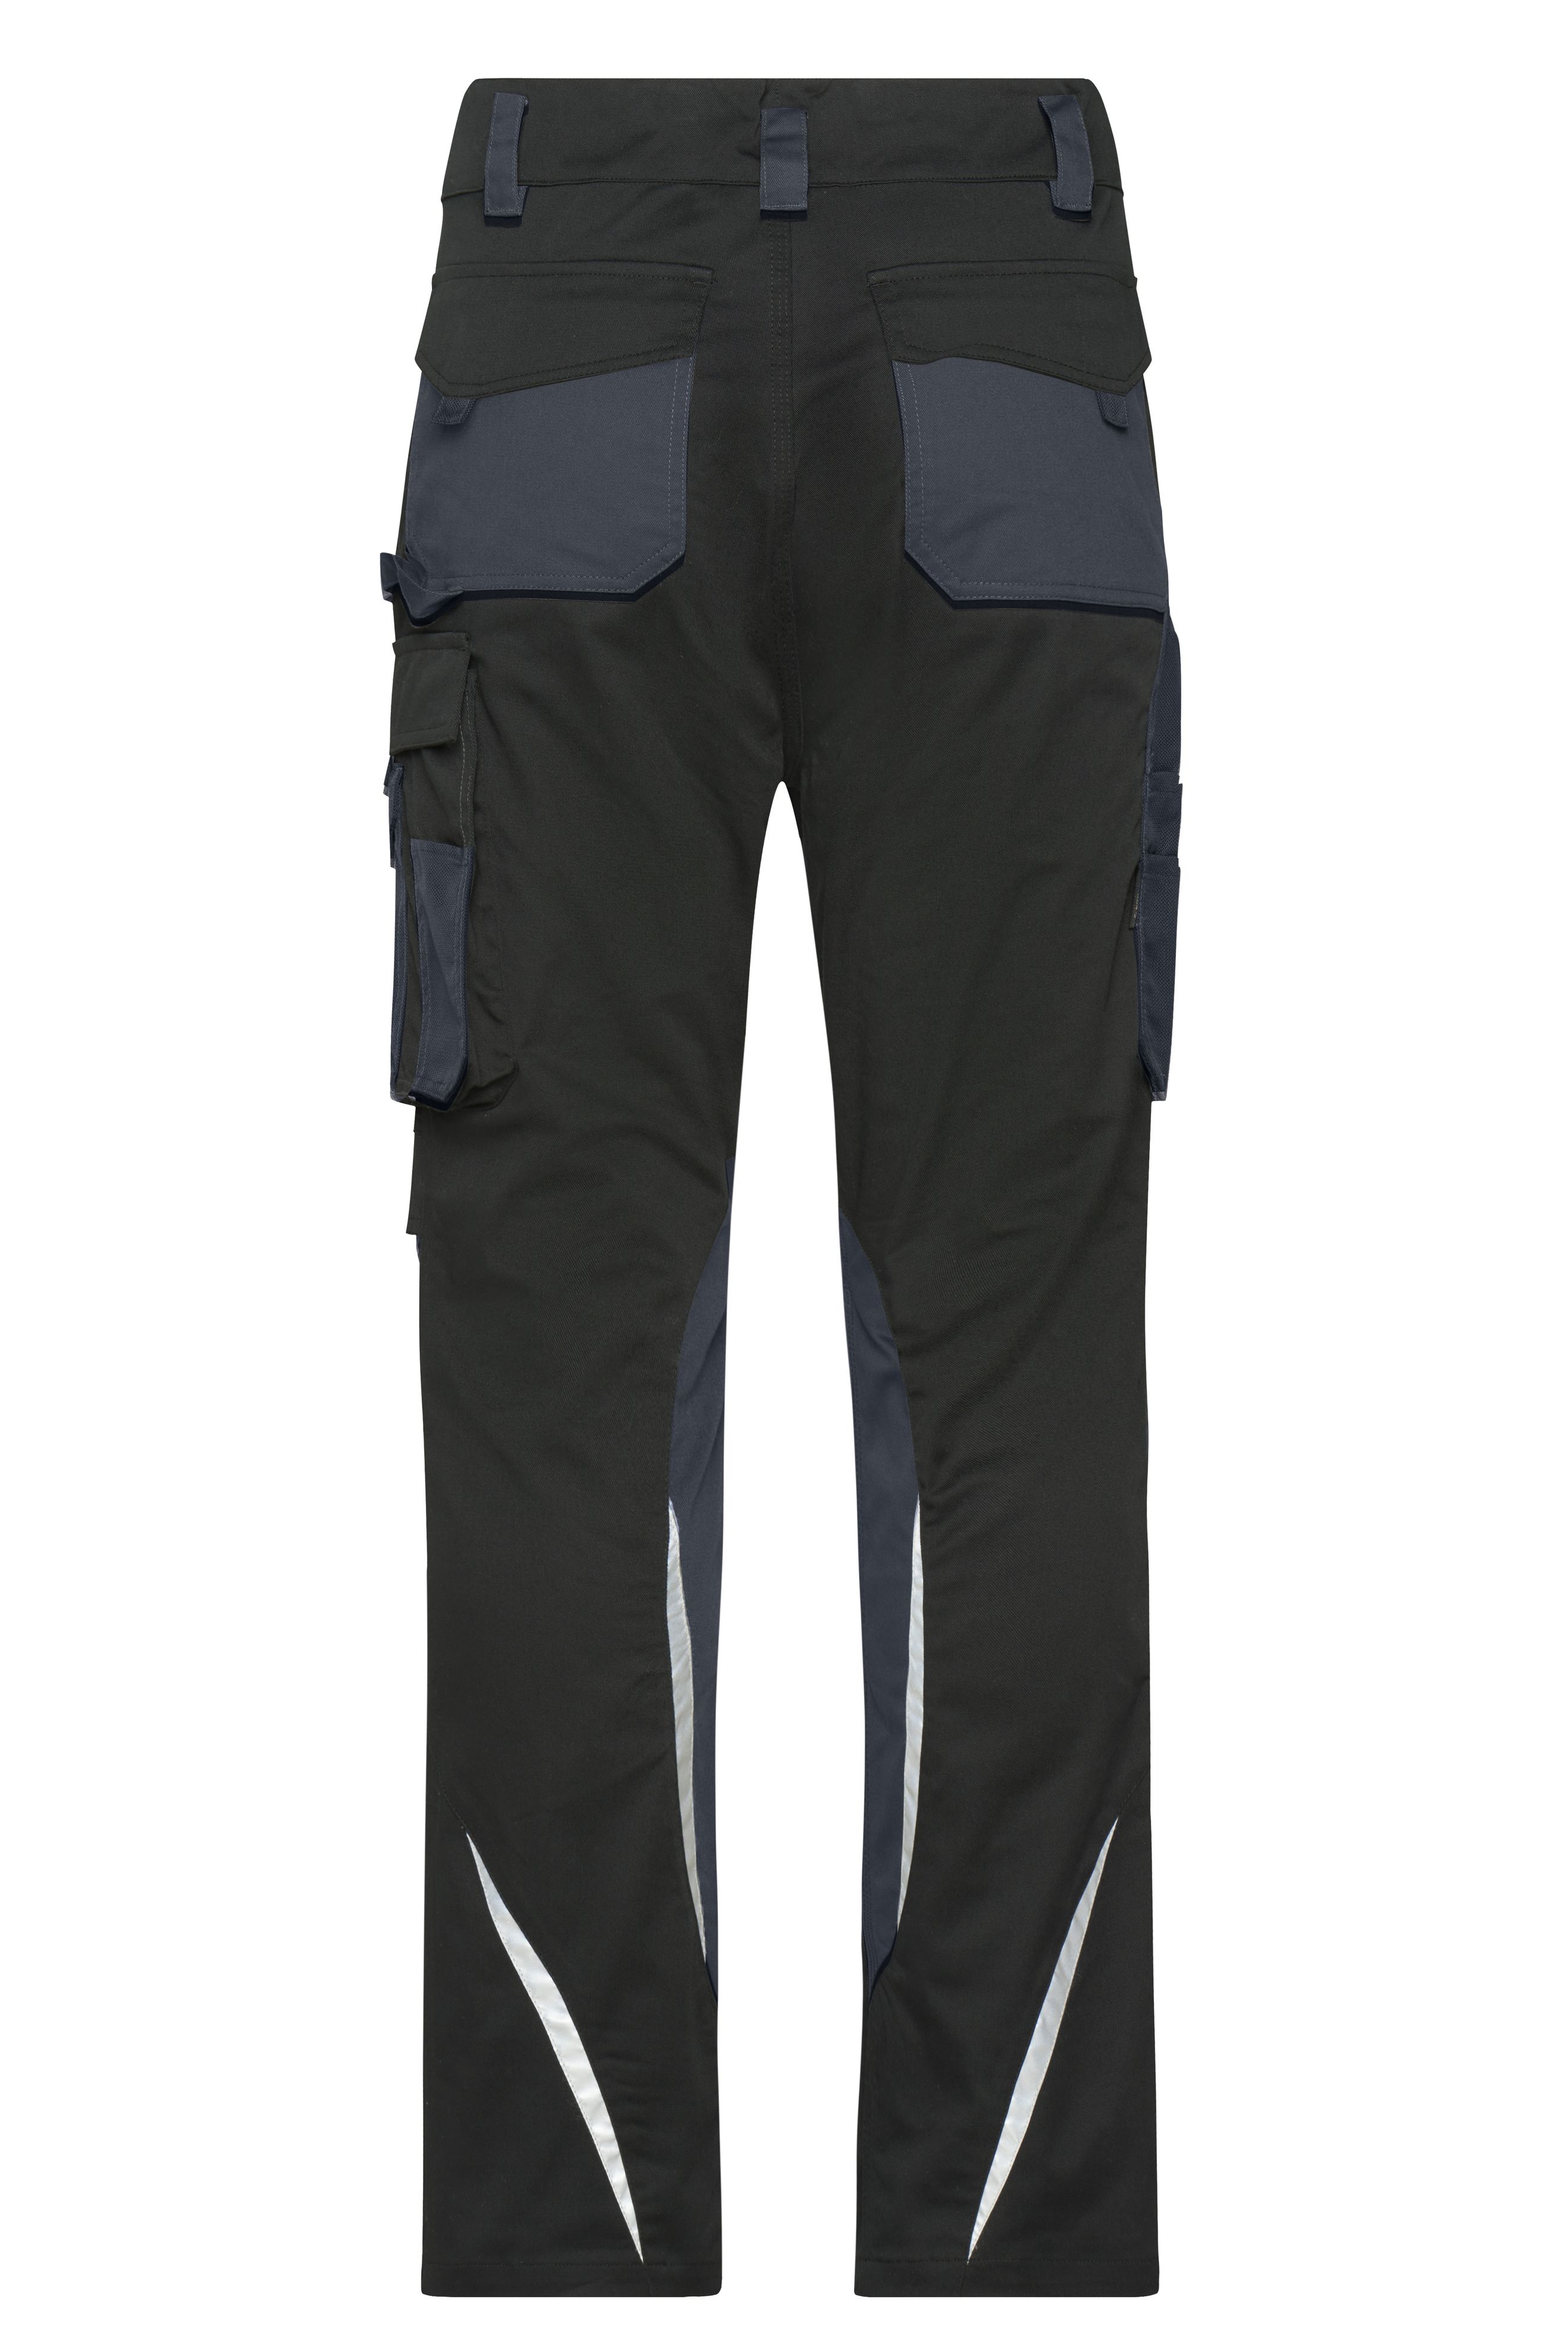 Workwear Pants Slim Line  - STRONG - JN1832 Spezialisierte Arbeitshose in schmalerer Schnittführung mit funktionellen Details